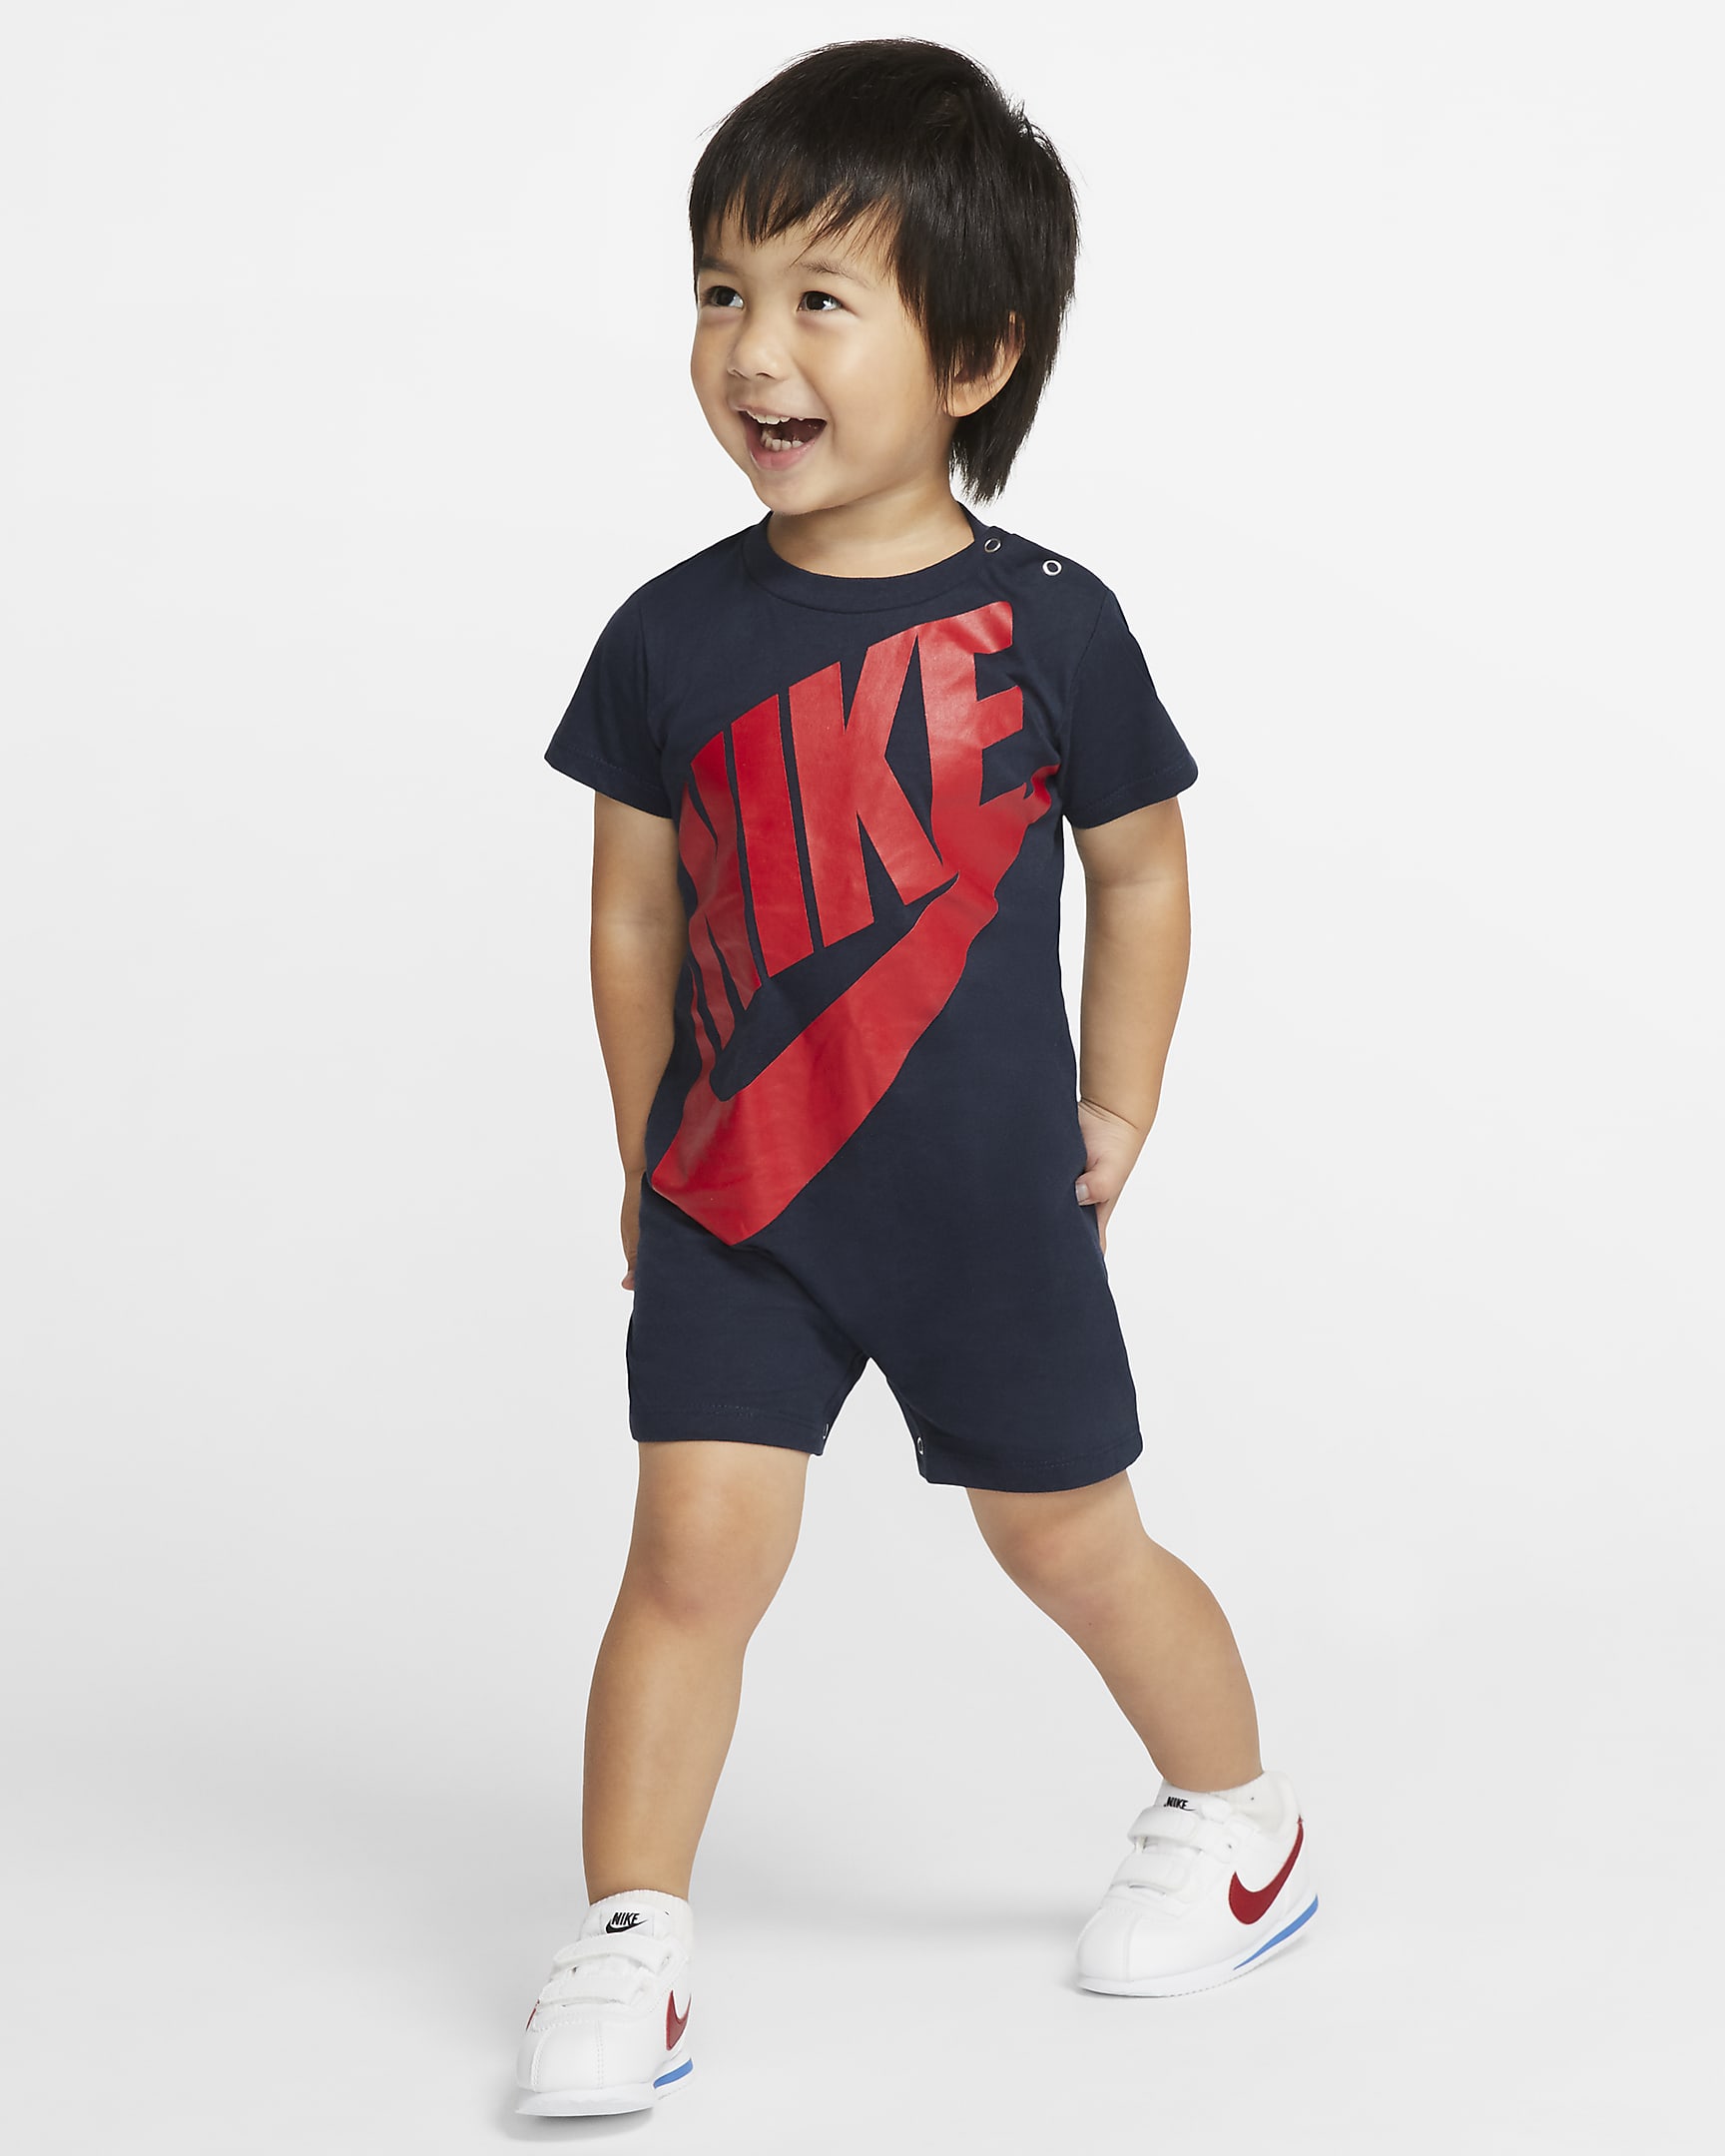 Nike Baby (12-24M) Romper. Nike.com